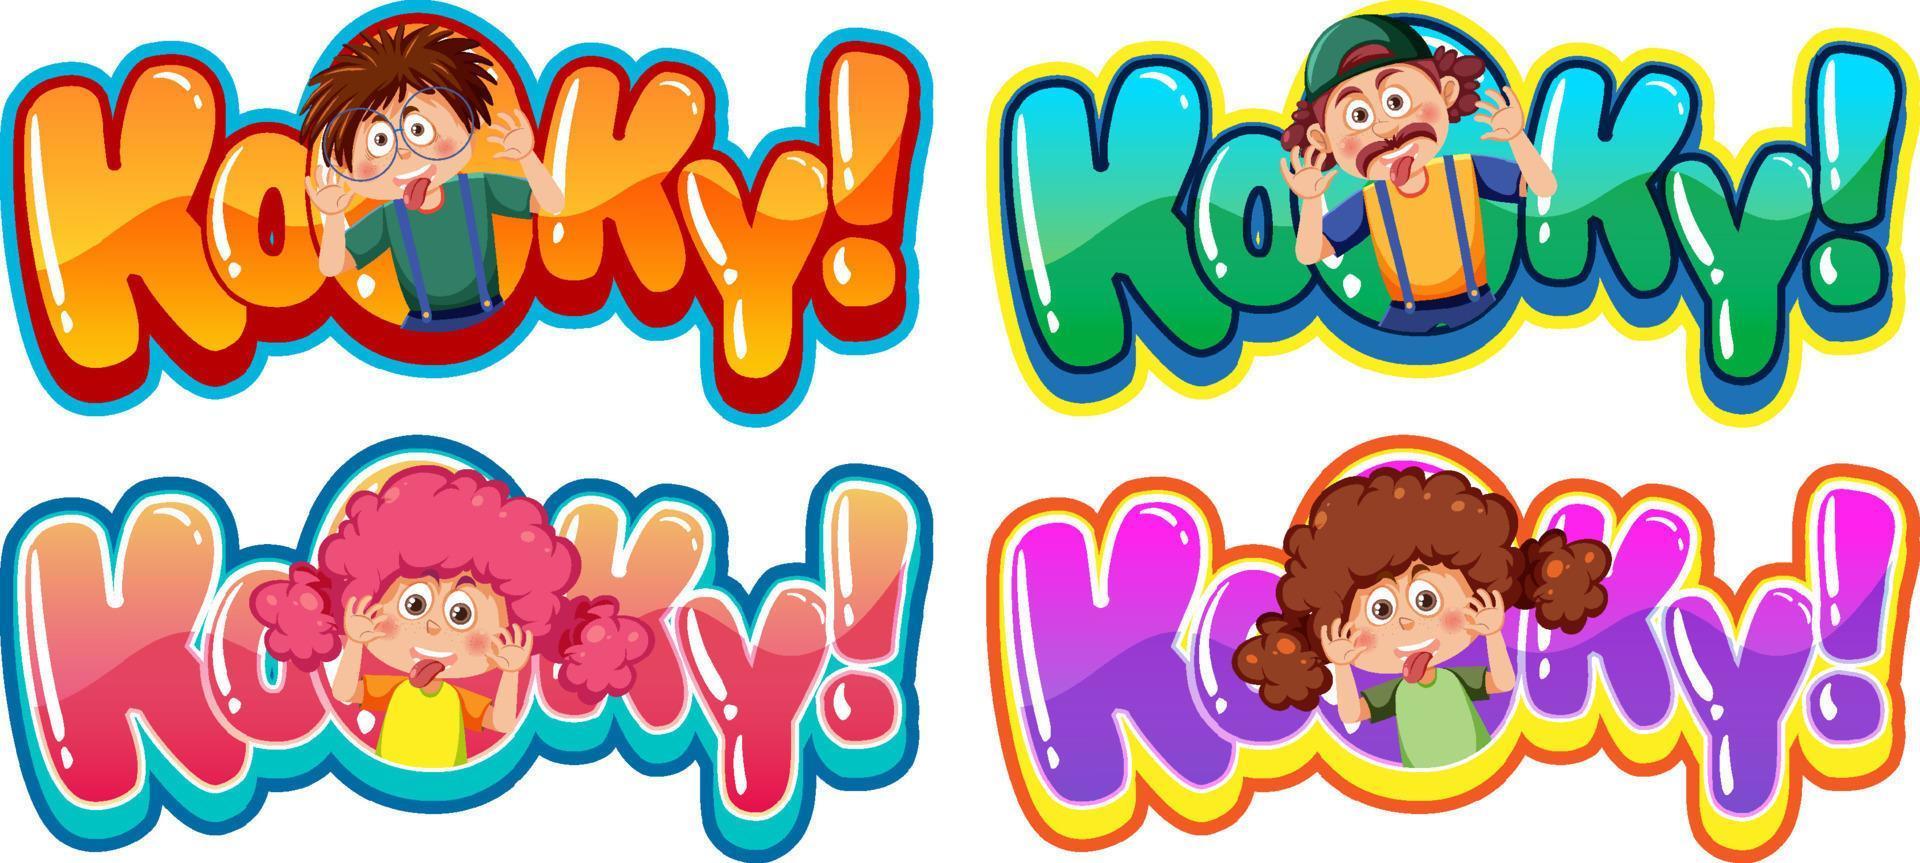 style comique de bannière de mot texte kooky avec expression de personnage de dessin animé vecteur